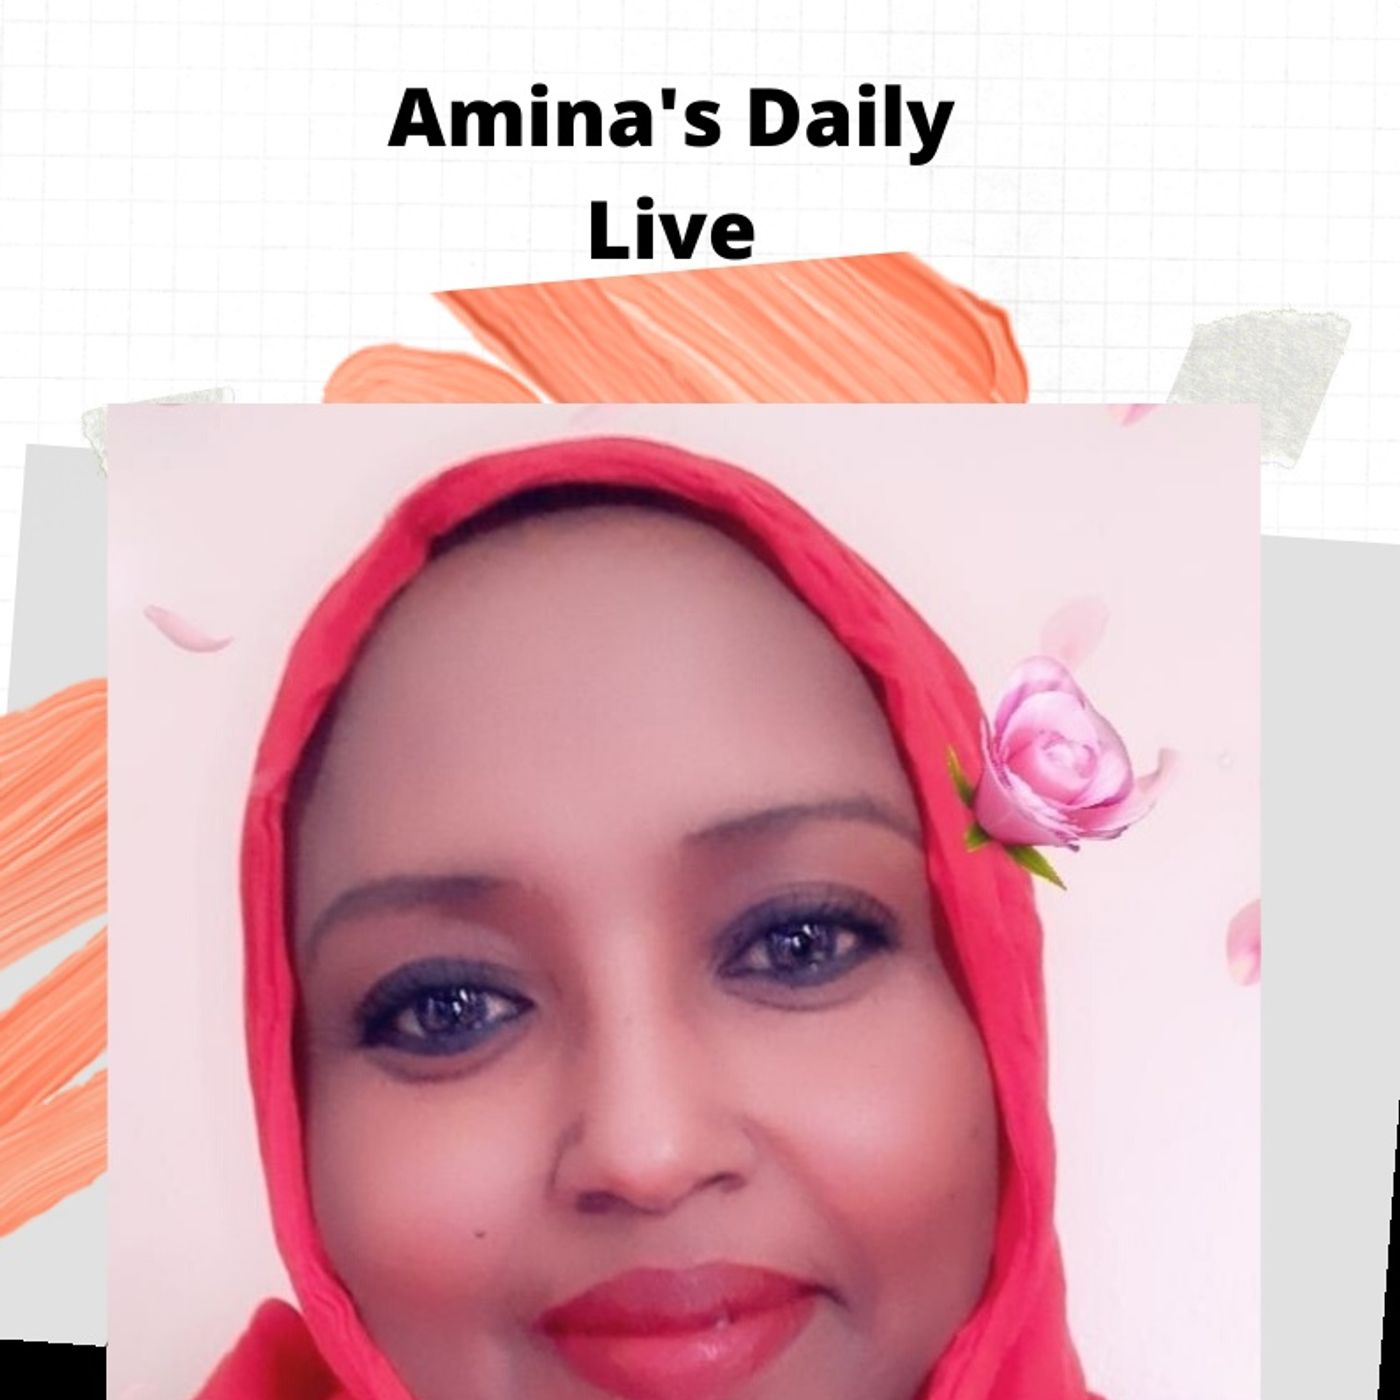 Amina's Daily Live